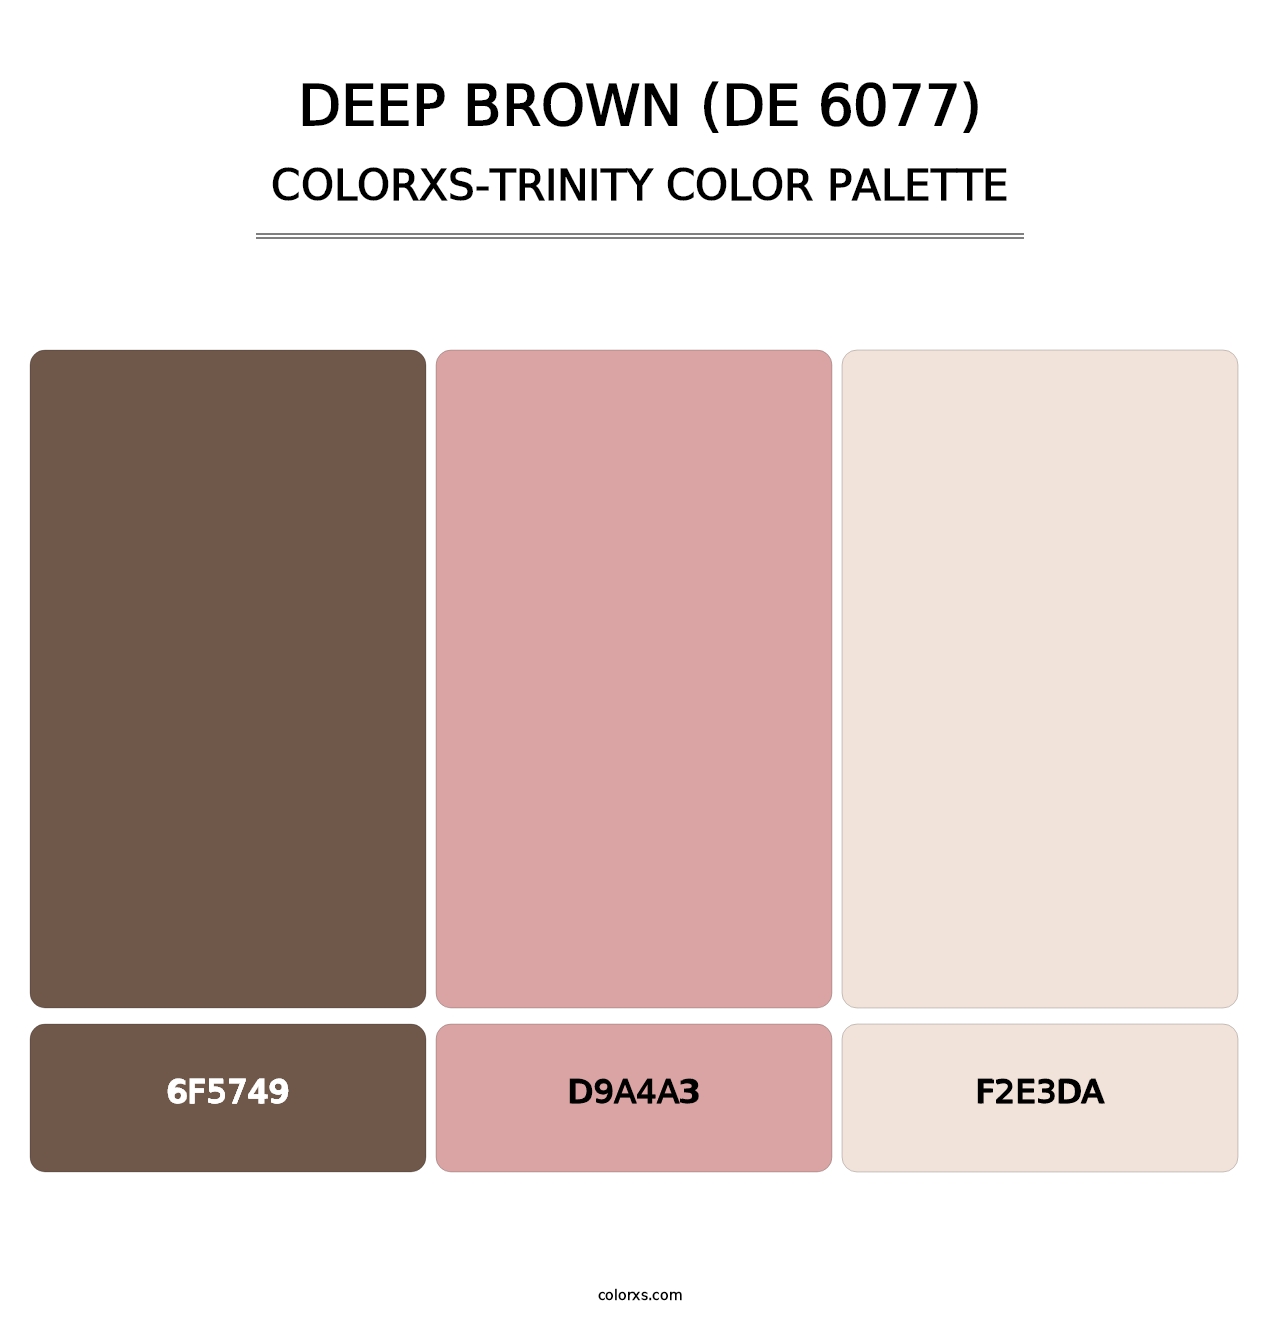 Deep Brown (DE 6077) - Colorxs Trinity Palette